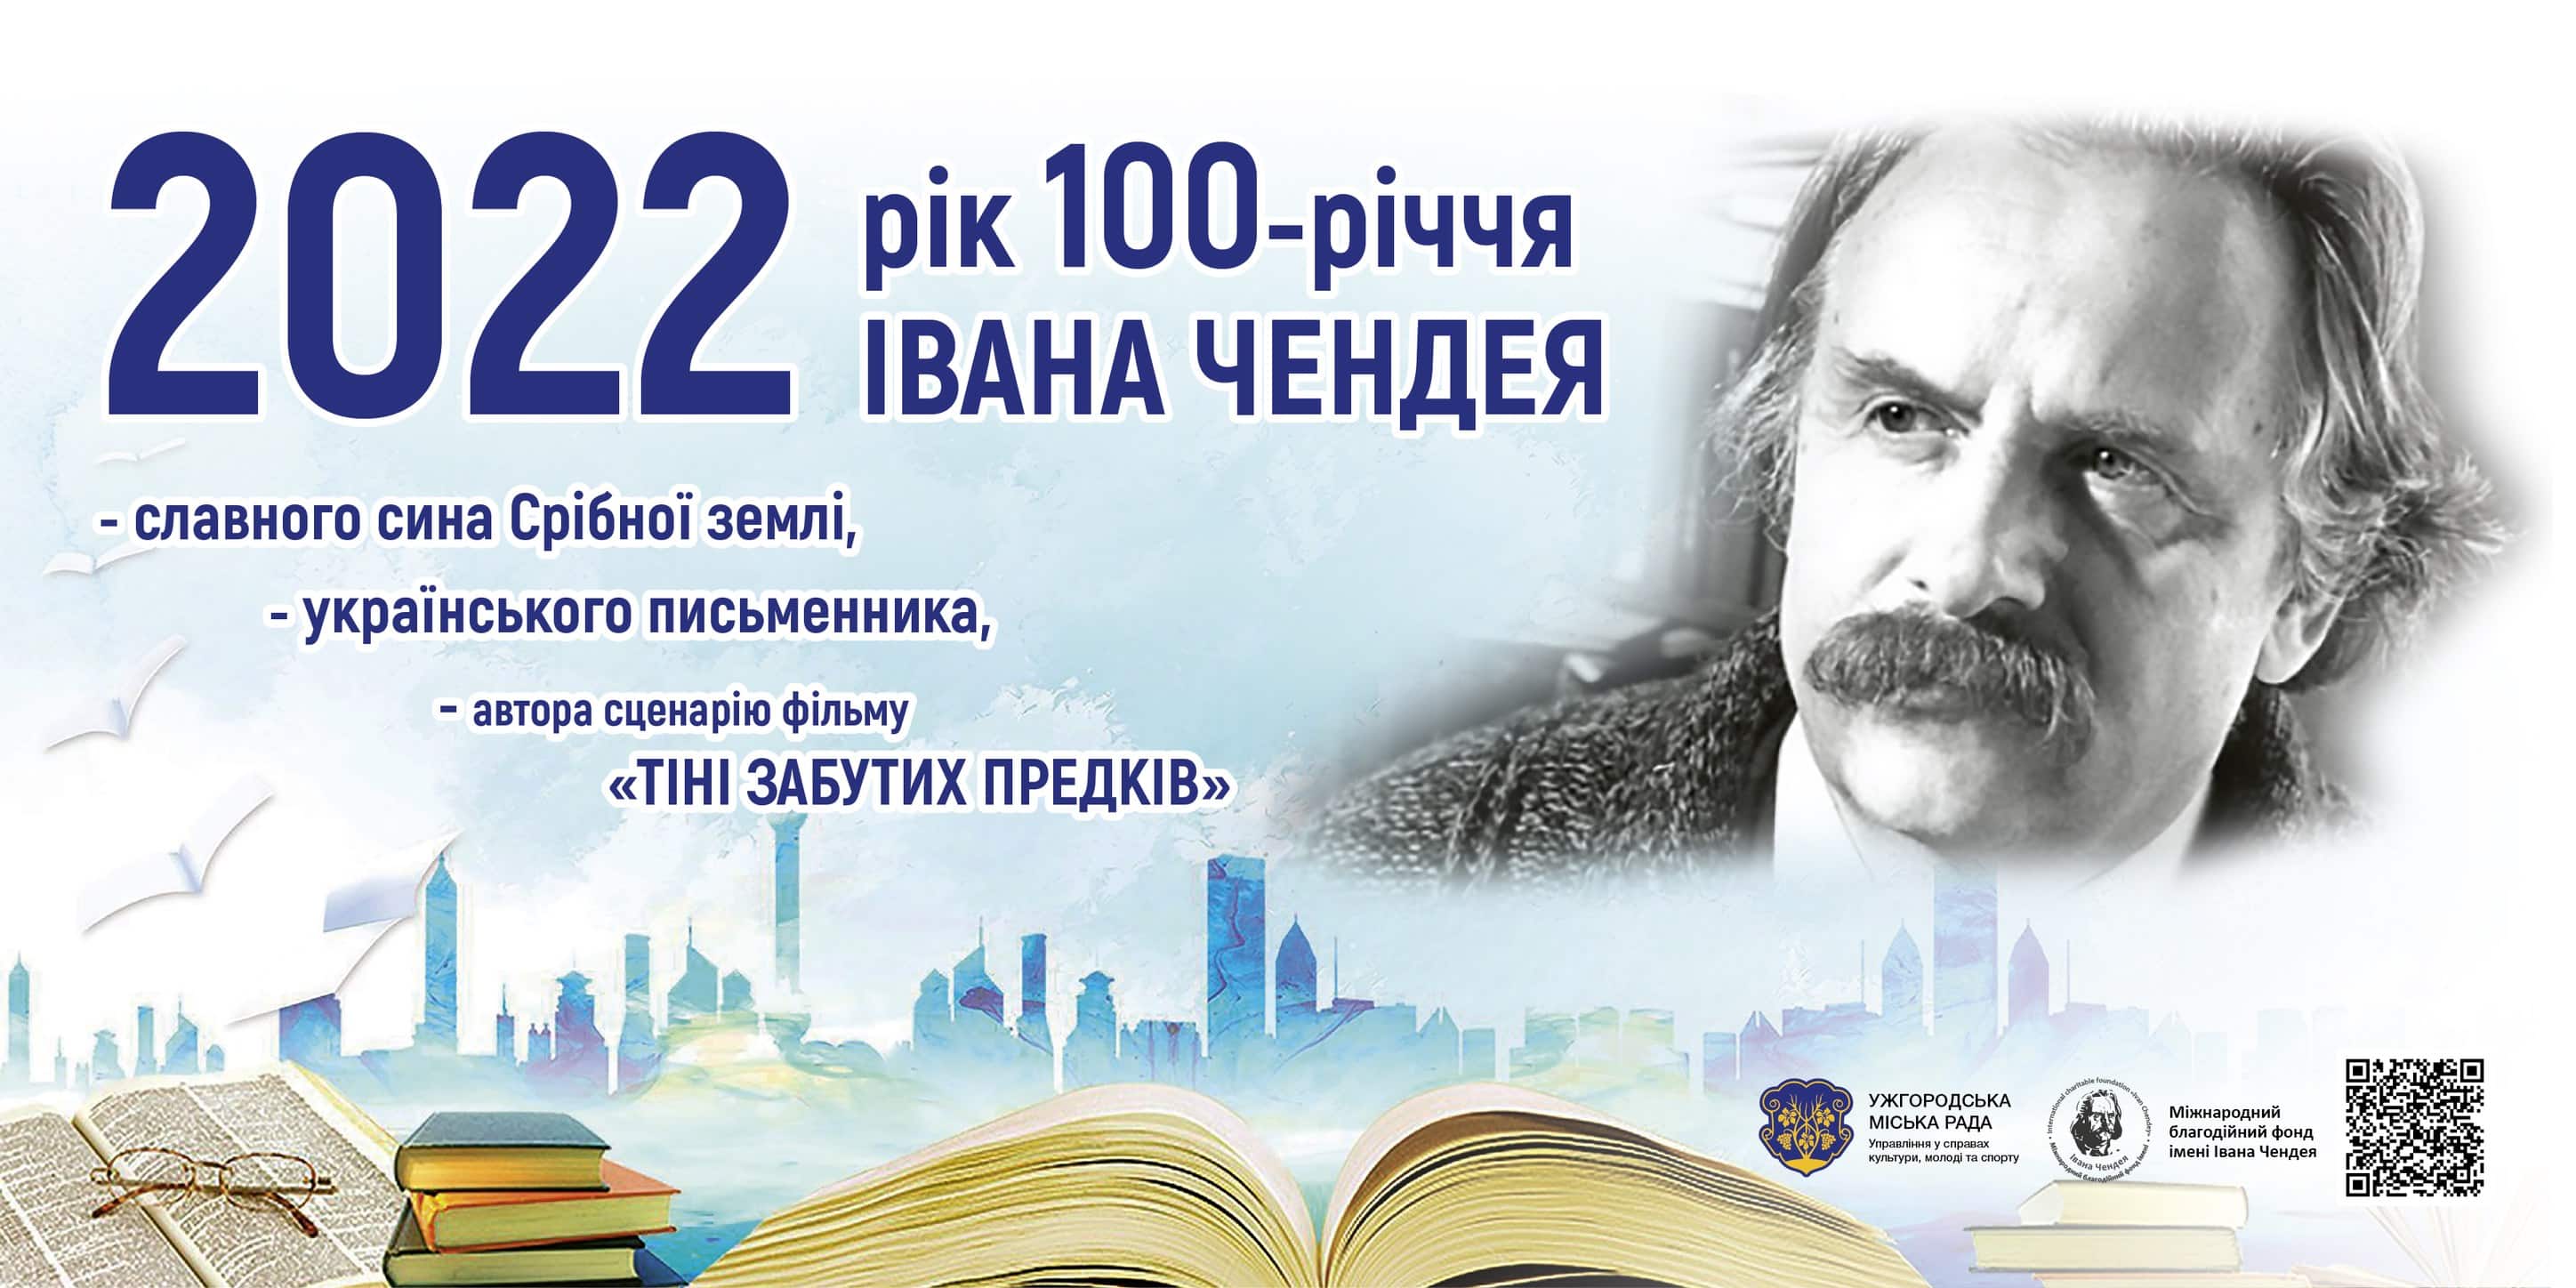 В Ужгороді відзначать 100-річчя відомого письменника Івана Чендея